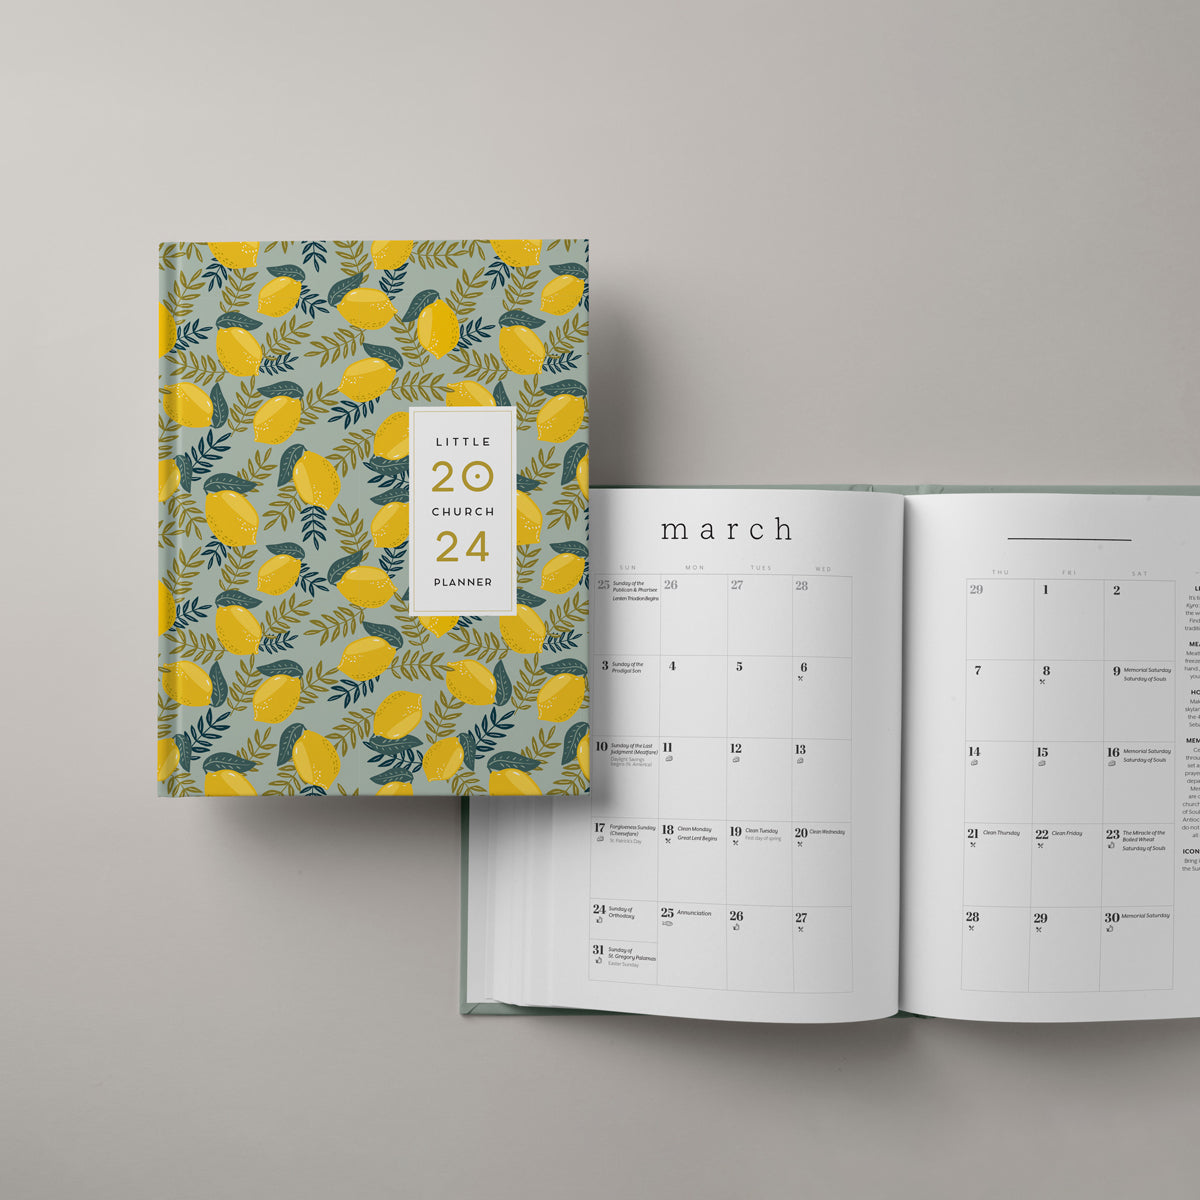 Little Church Planner | New Calendar